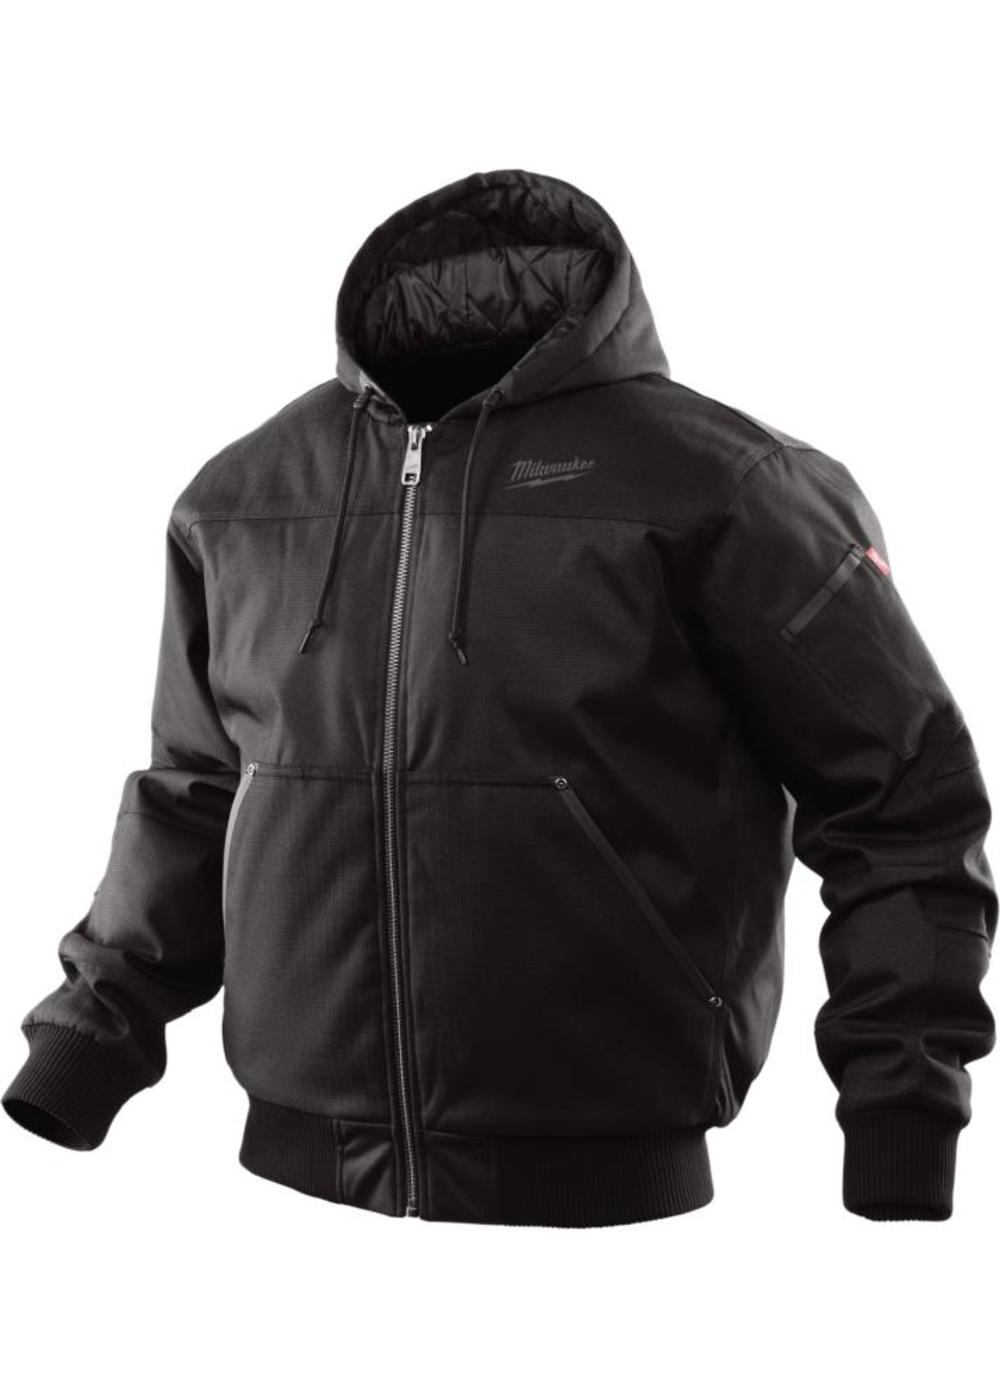 Milwaukee Black Hooded Jacket - Medium